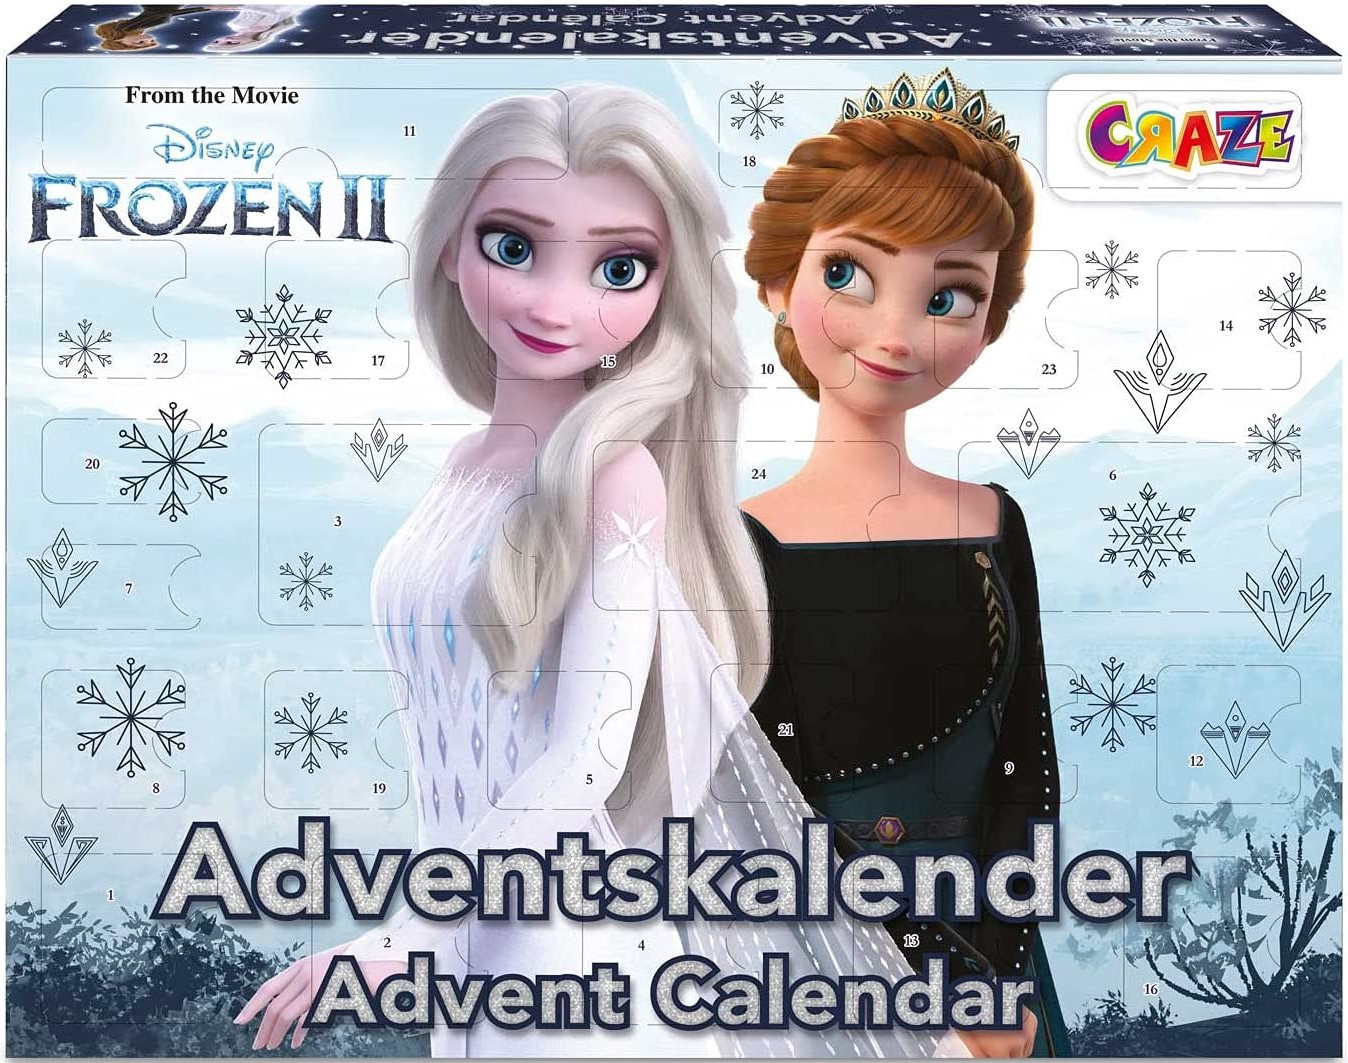 CRAZE Frozen II Spielzeugkalender